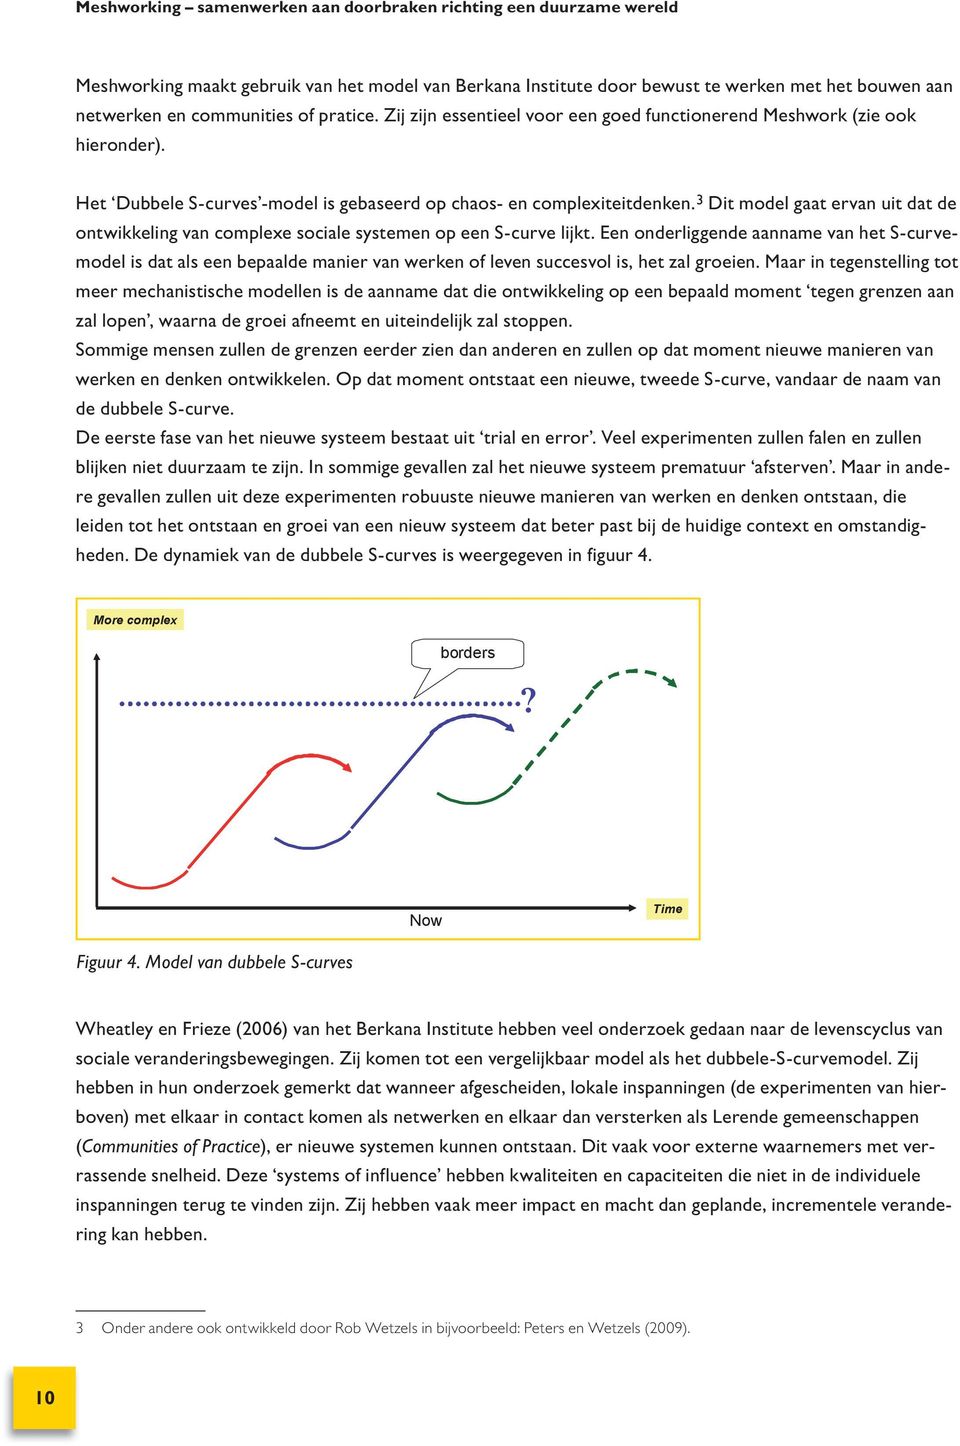 3 Dit model gaat ervan uit dat de ontwikkeling van complexe sociale systemen op een S-curve lijkt.